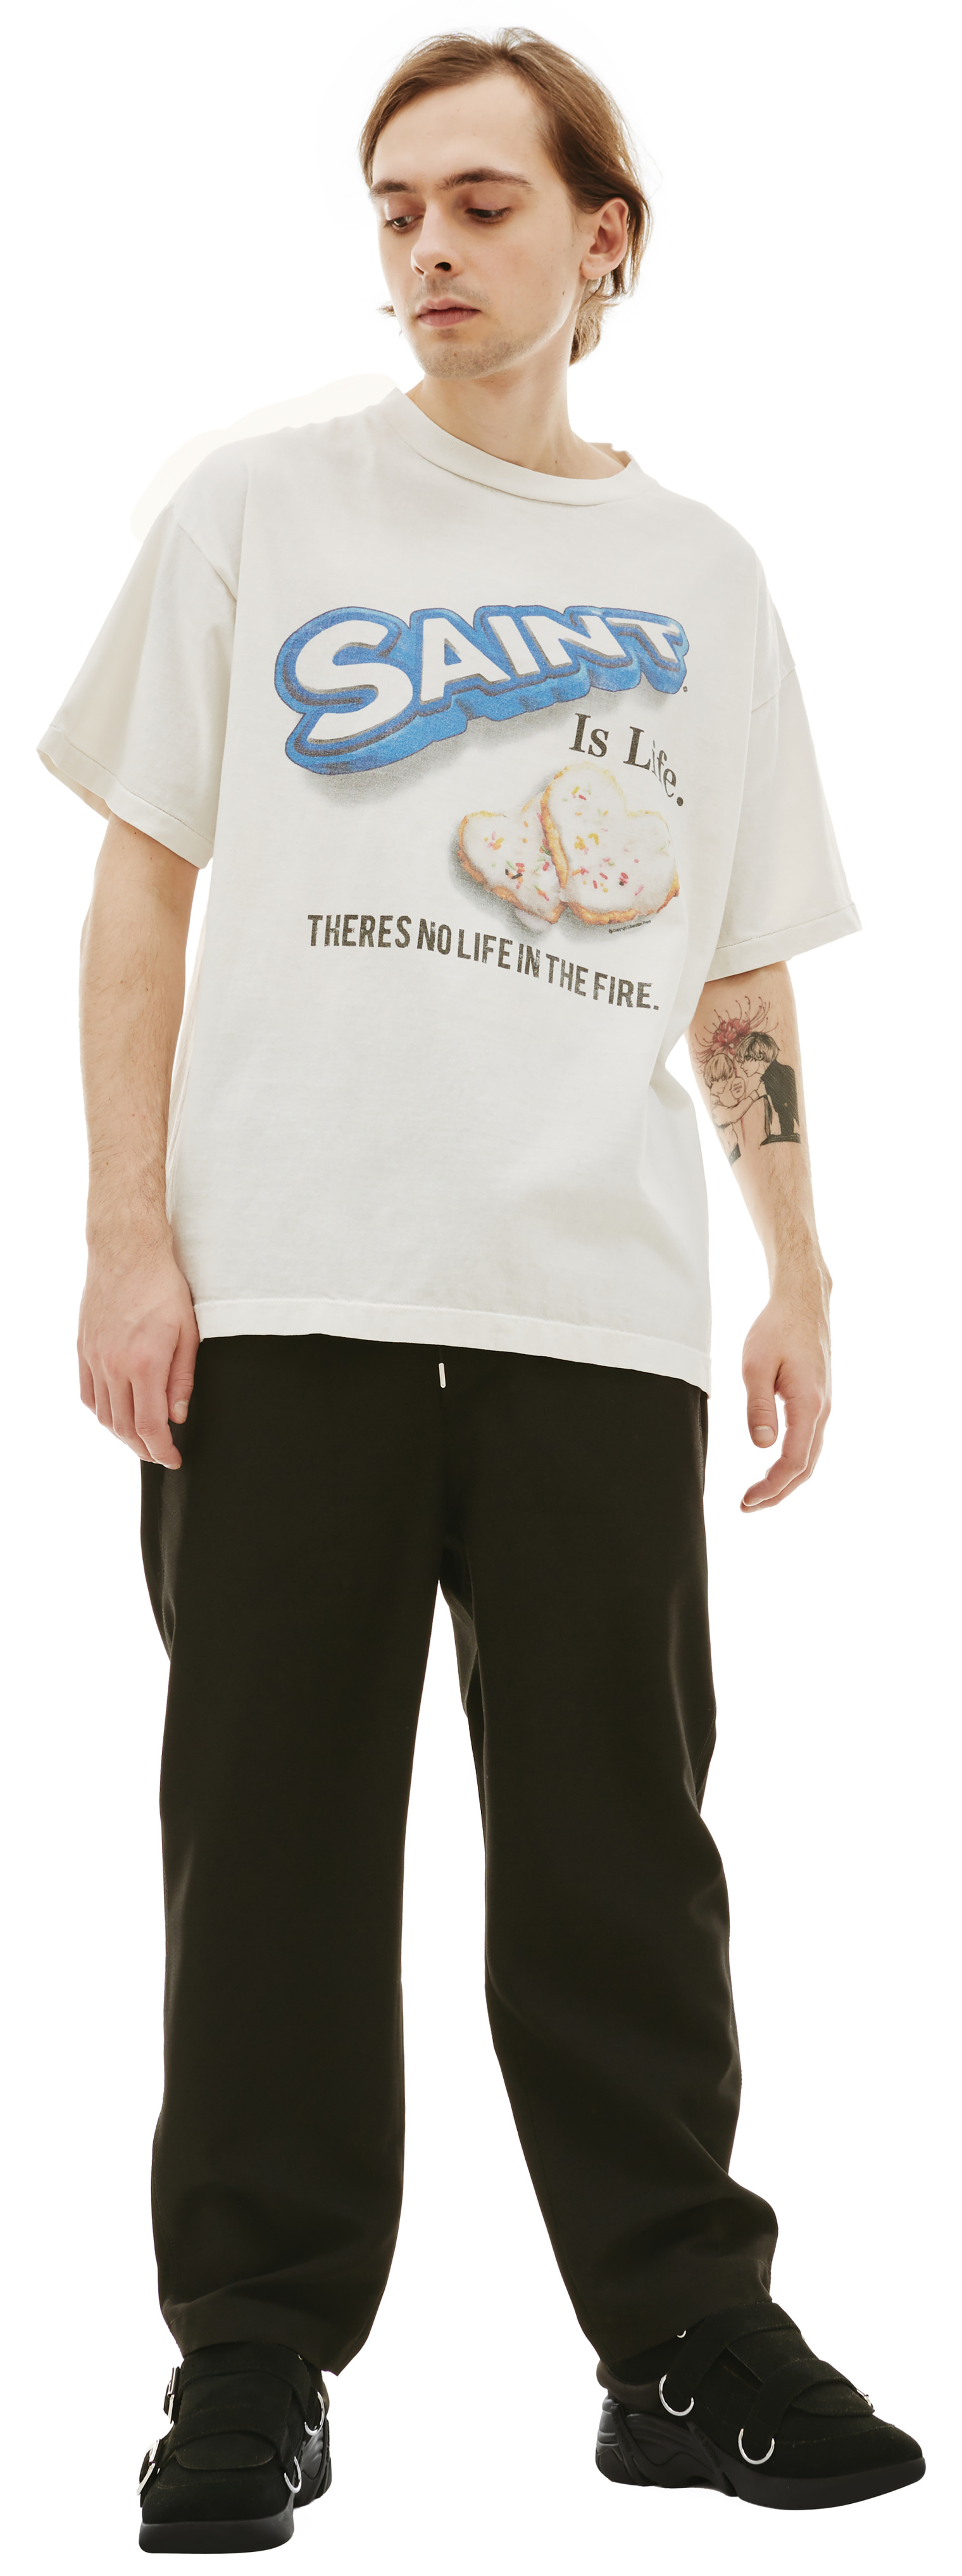 Buy Saint Michael men white oreo cotton t-shirt for $364 online on